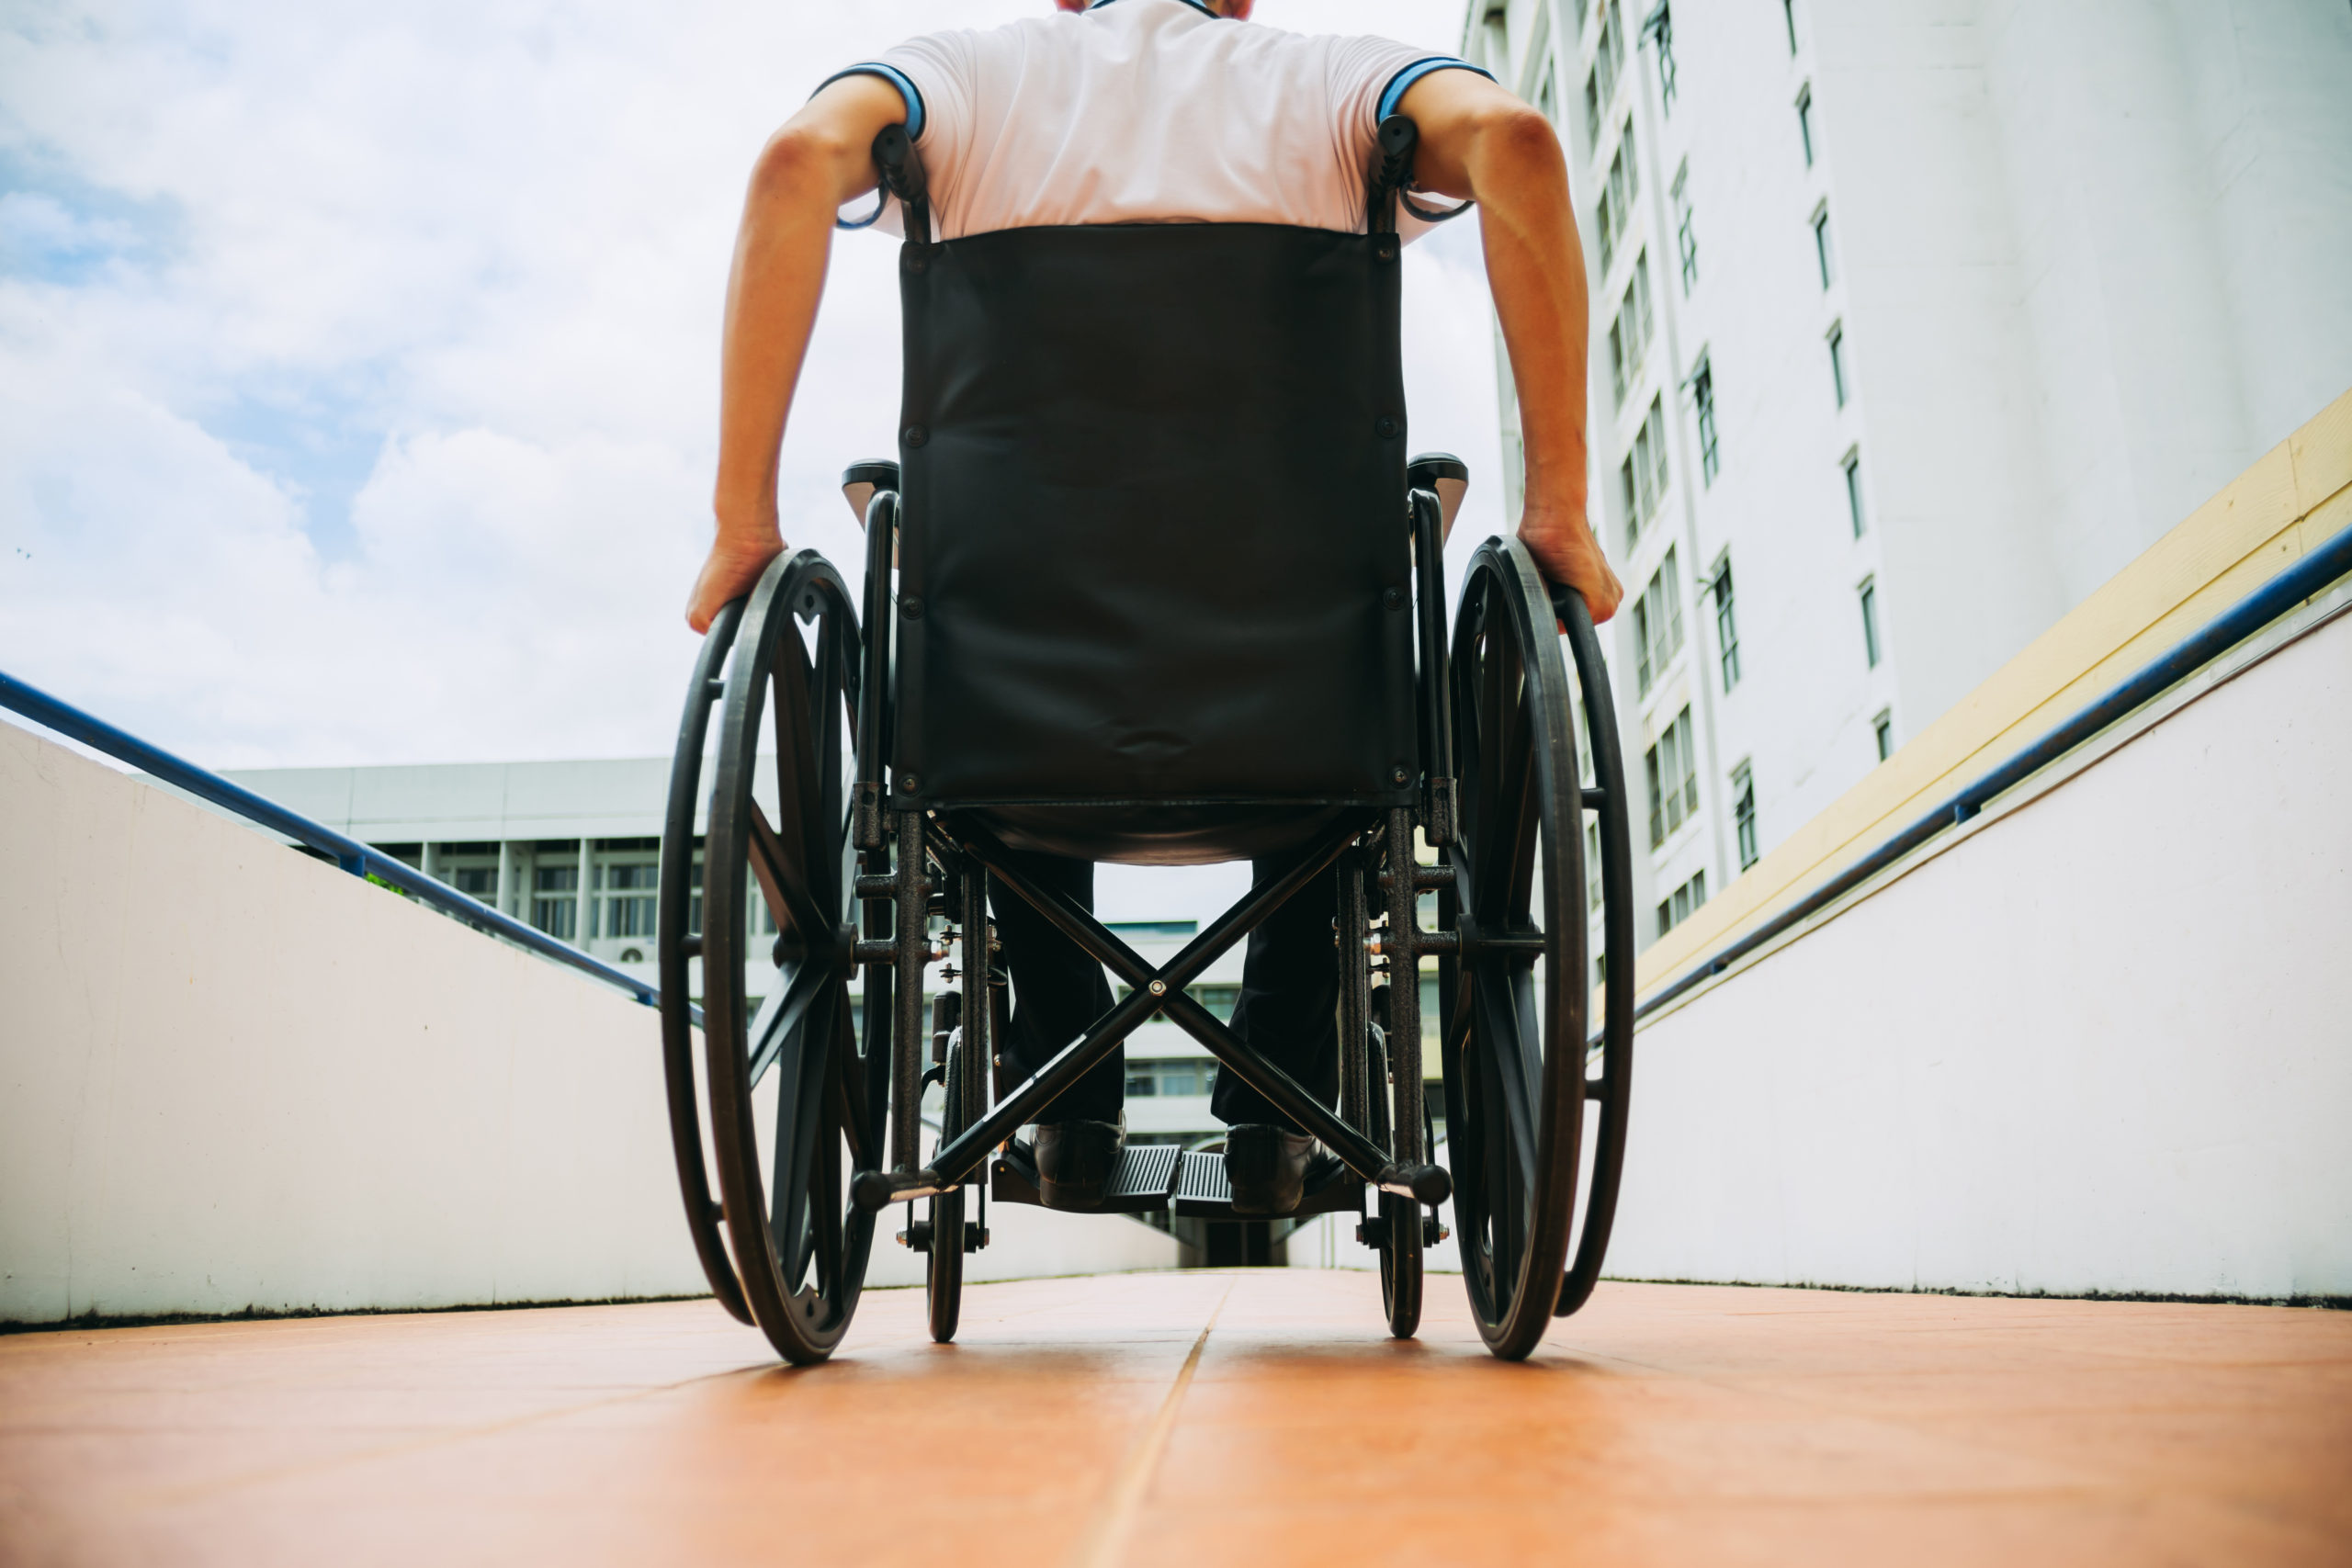 Fotografía de persona usuaria de silla de ruedas en un pasillo de un inmueble.